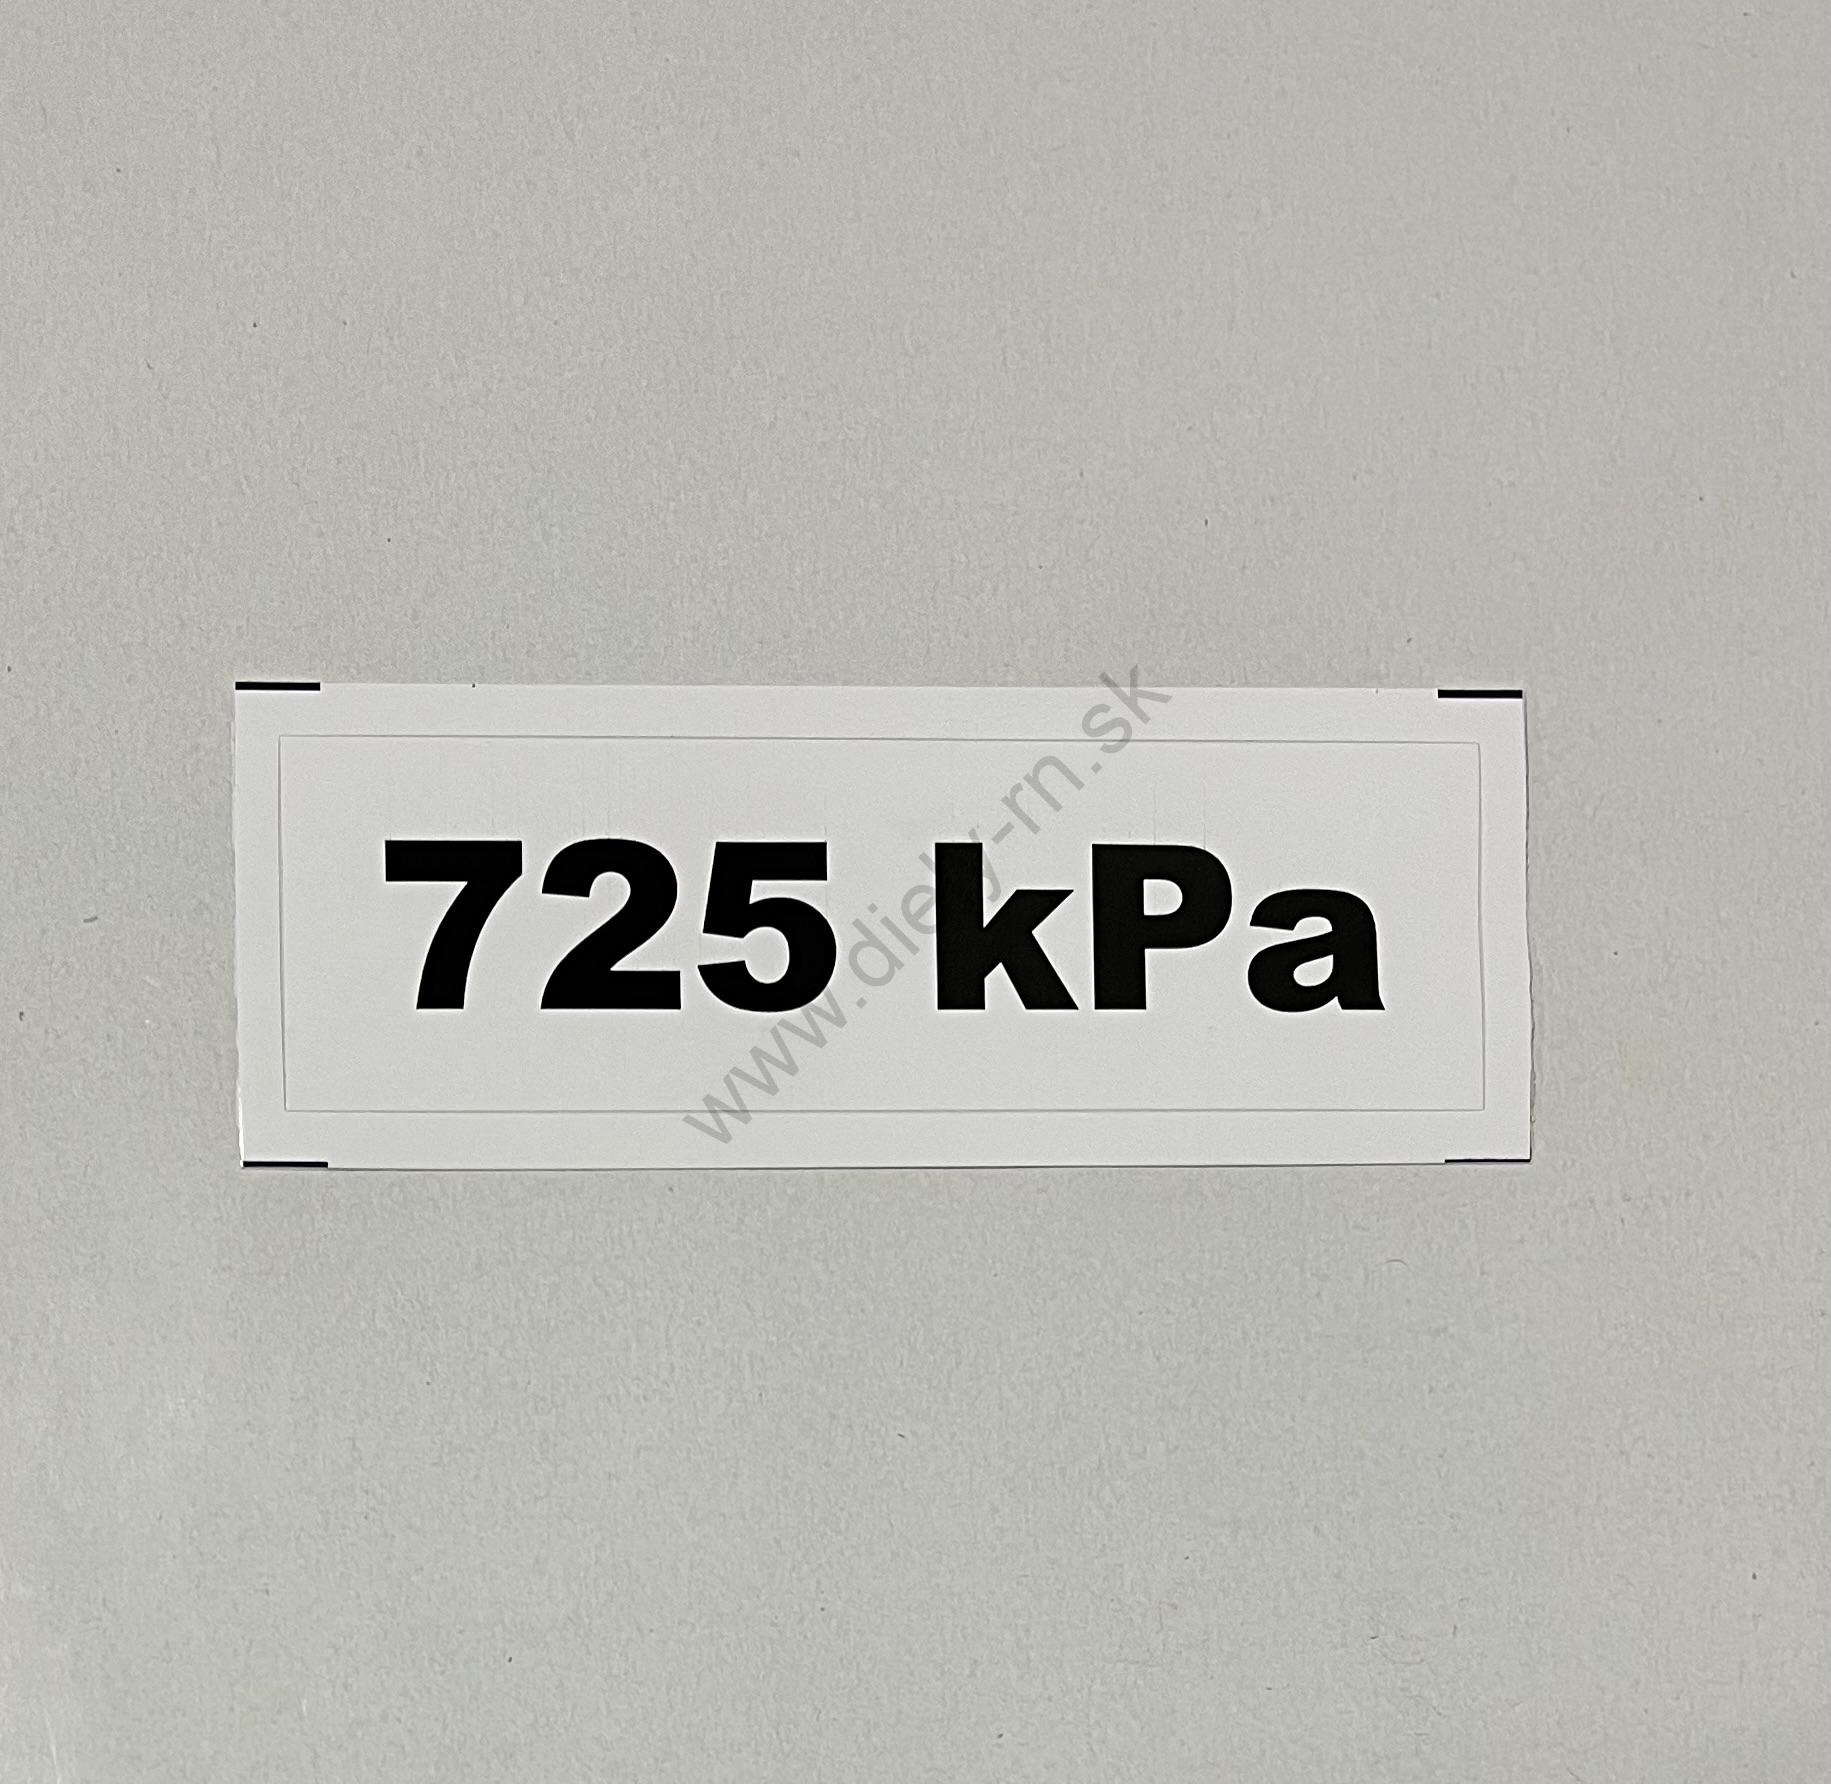 Označenie kPa 725